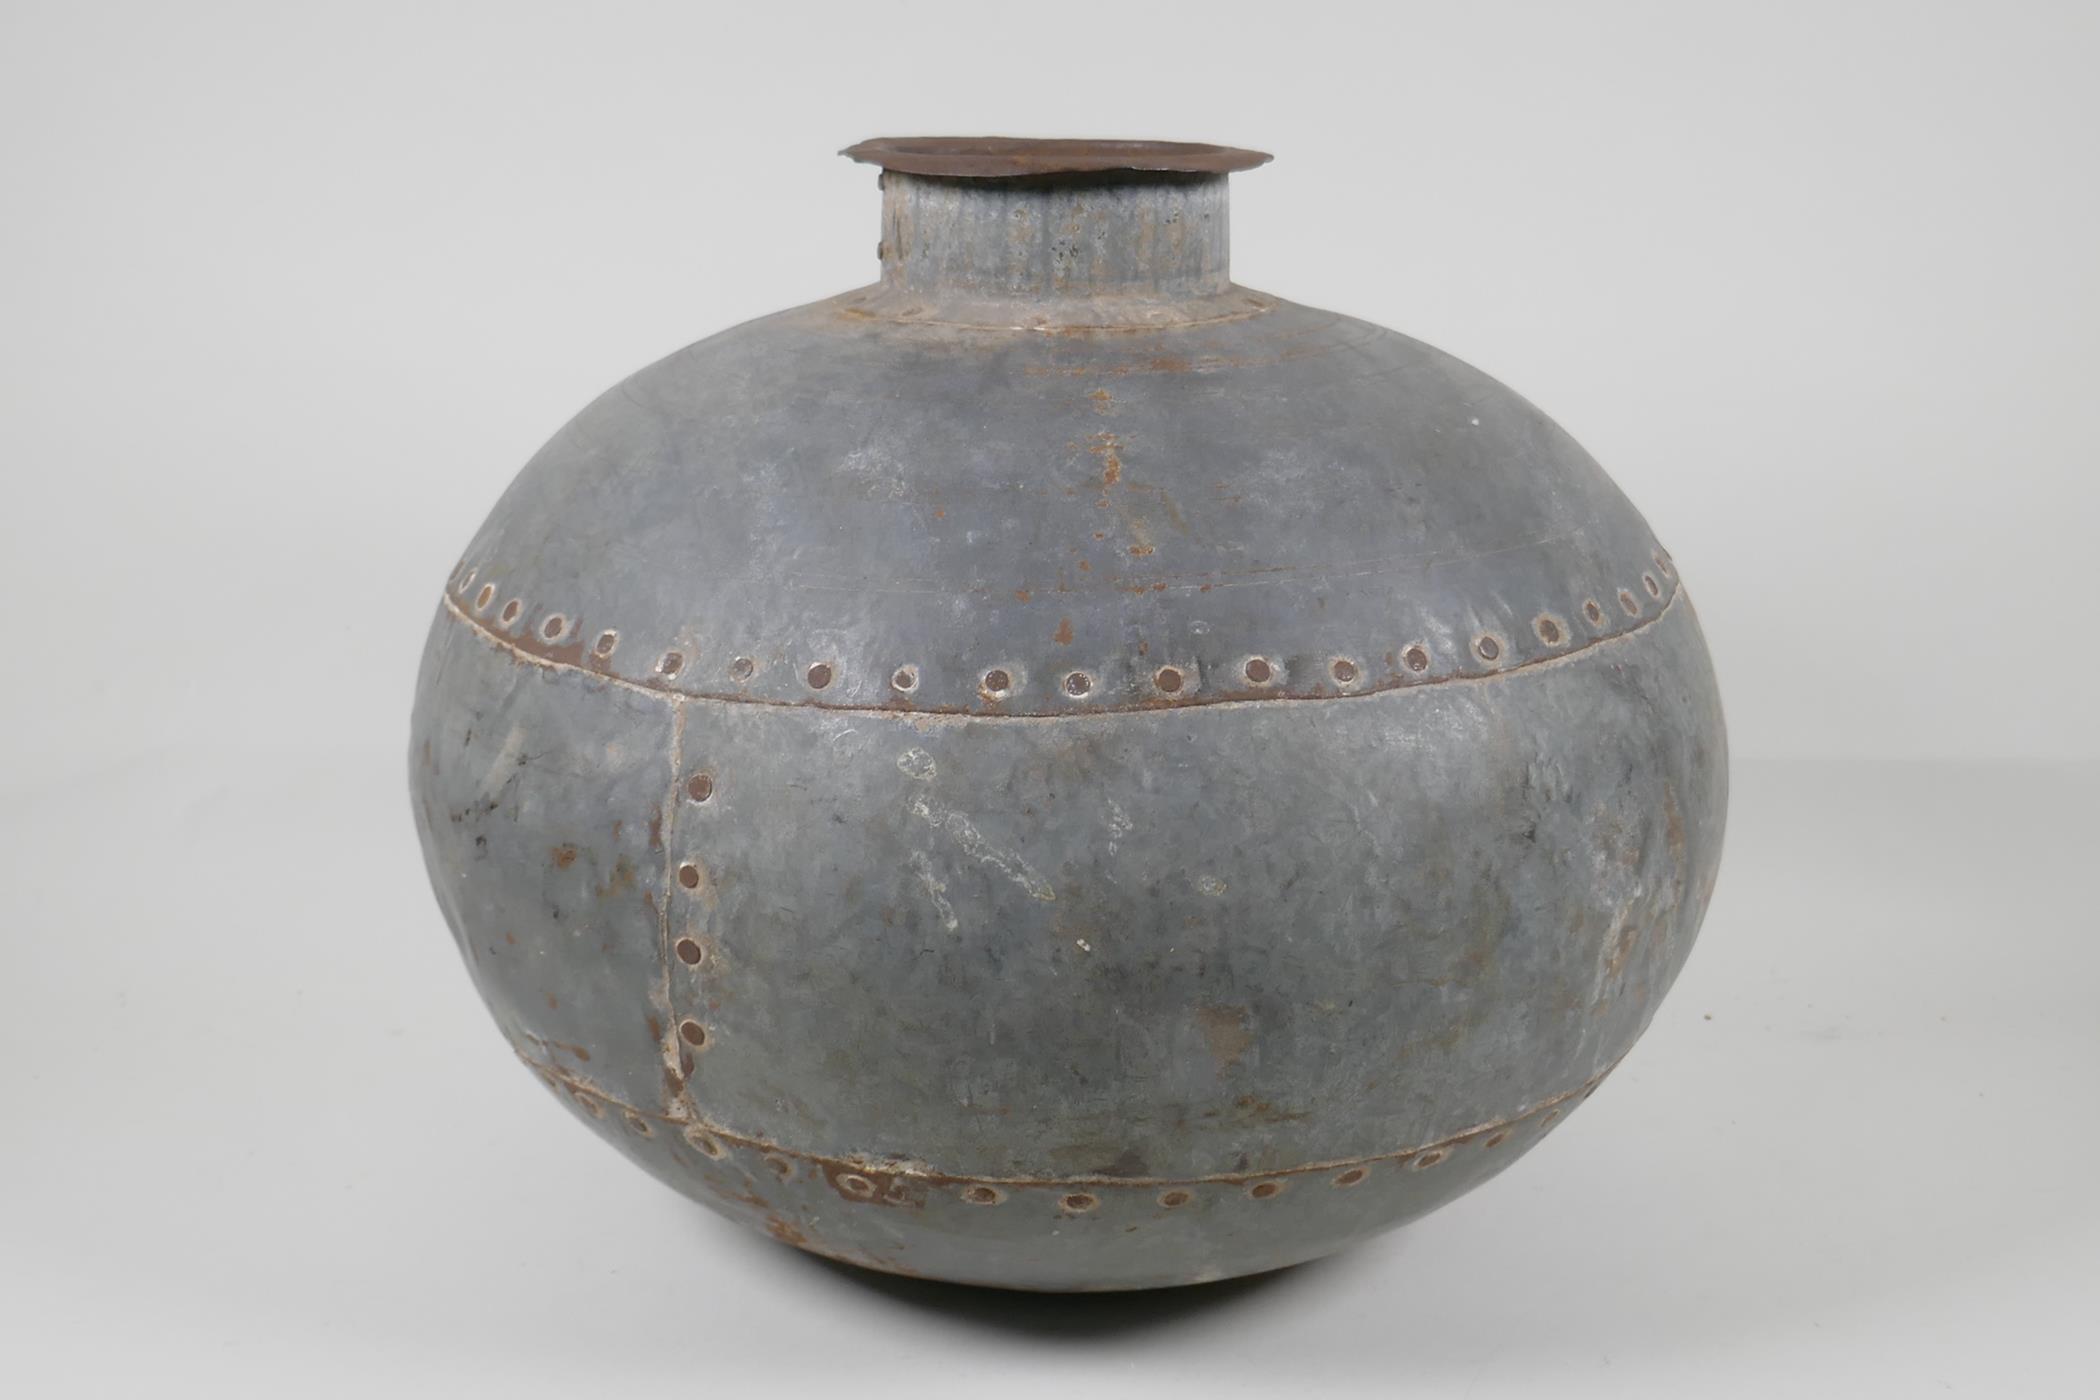 An Indian riveted metal pot/jar, 13½" diameter